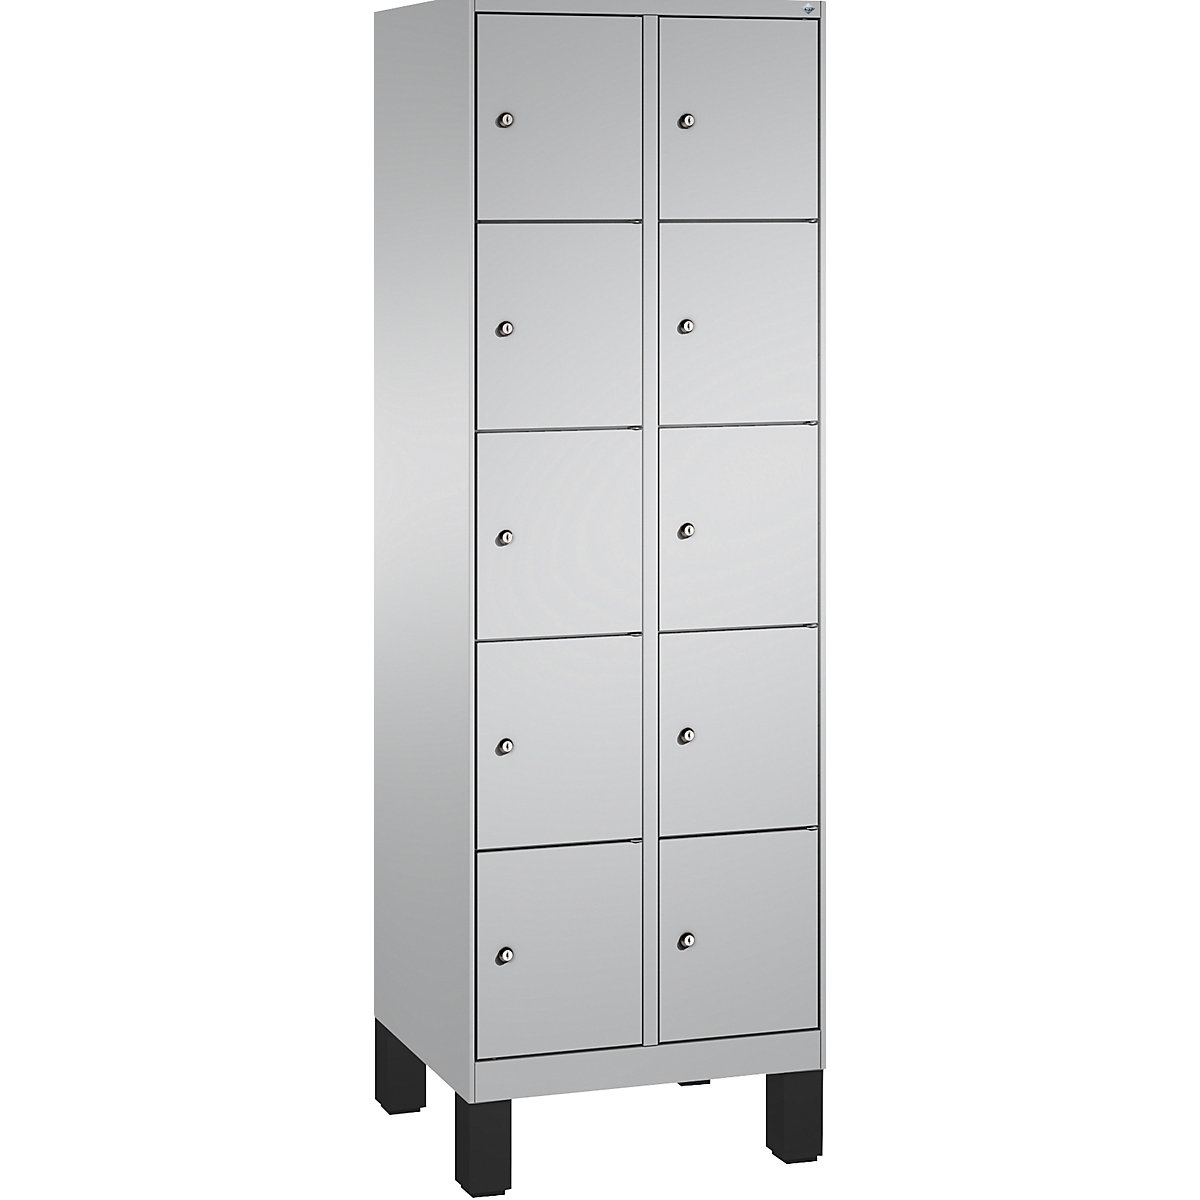 Armoire à casiers sur pieds EVOLO – C+P, 2 compartiments, 5 casiers chacun, largeur compartiments 300 mm, aluminium / aluminium-3